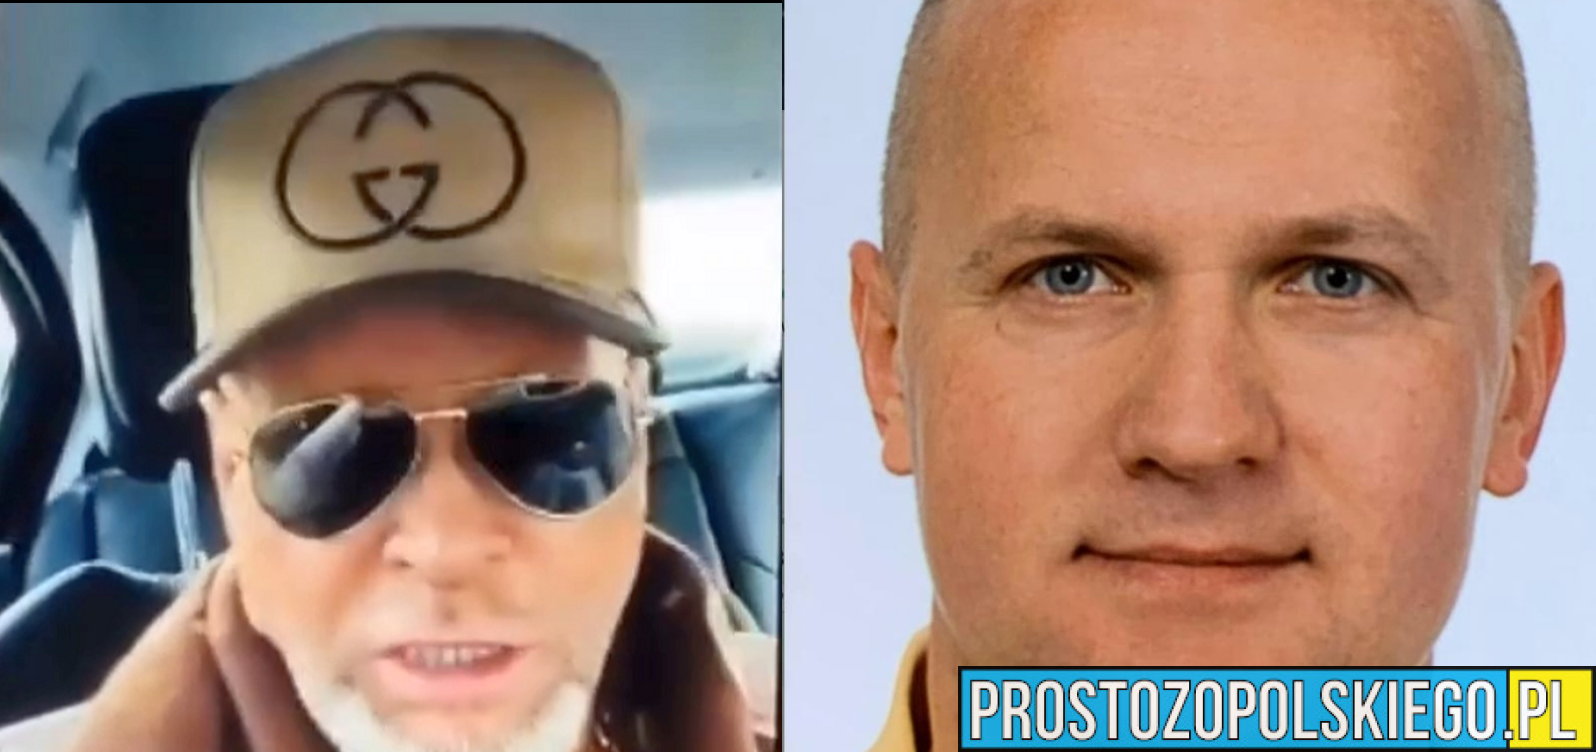 Rozmowa Prostozopolskiego z Krzysztofem Rutkowskim. Poszukiwanie policjanta z Kluczborka.(Wideo)